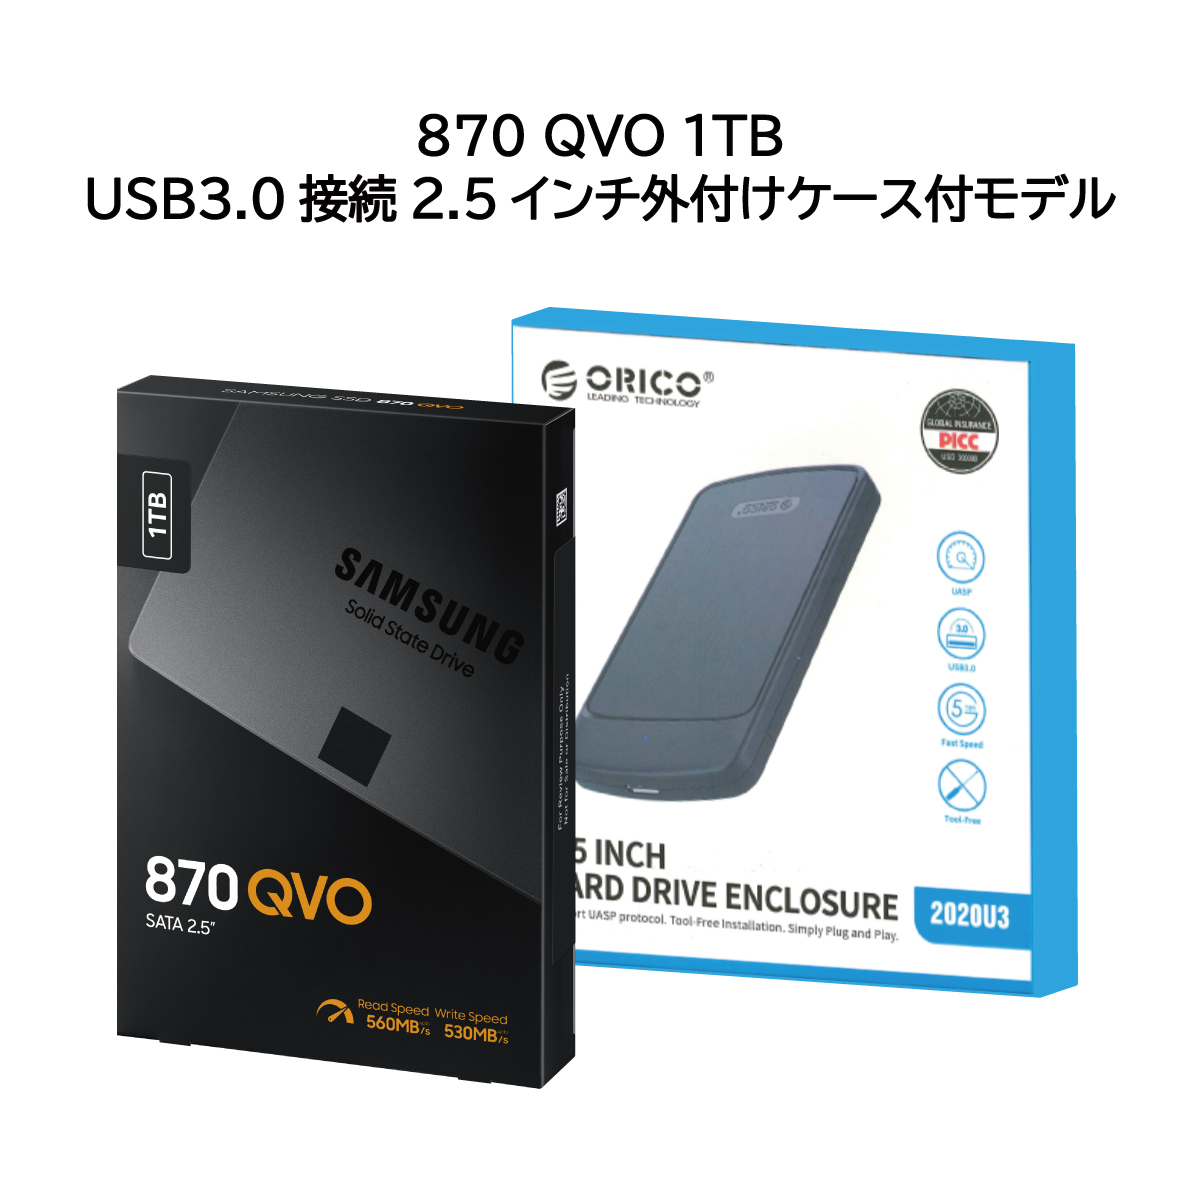 870 QVO USB 3.0接続 2.5インチ外付けケース付モデル – ITG 